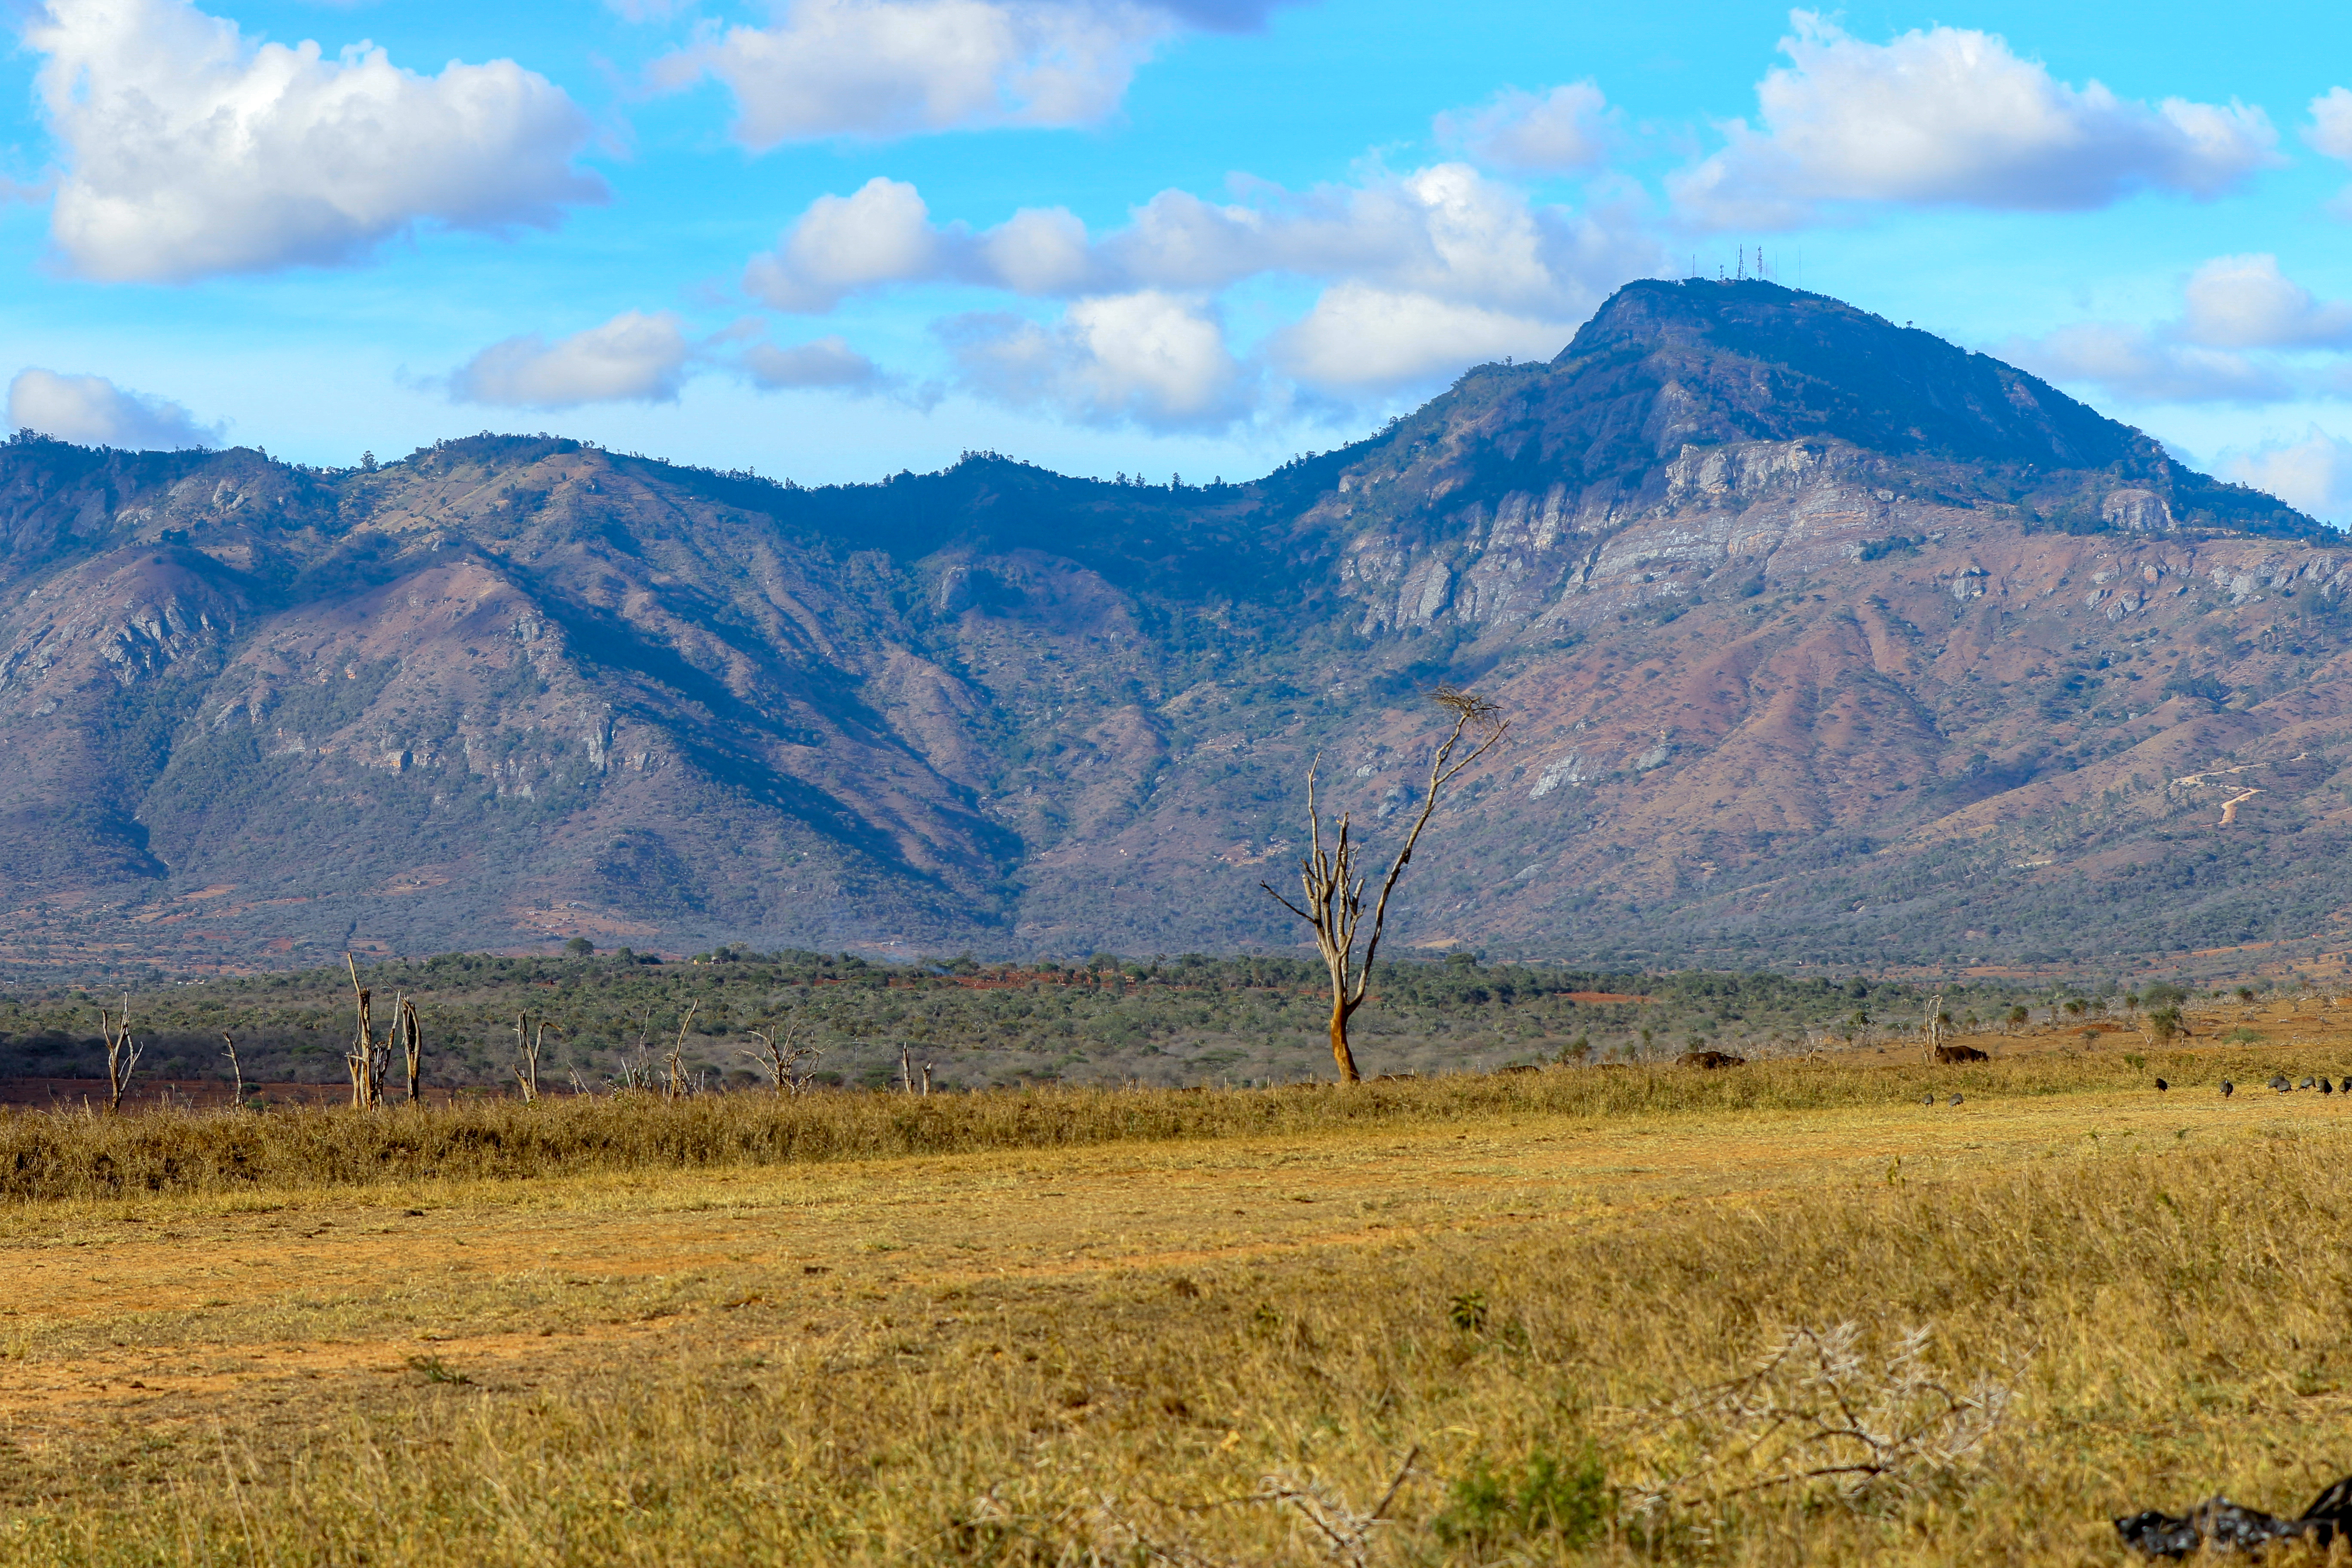 Tsavo landscape